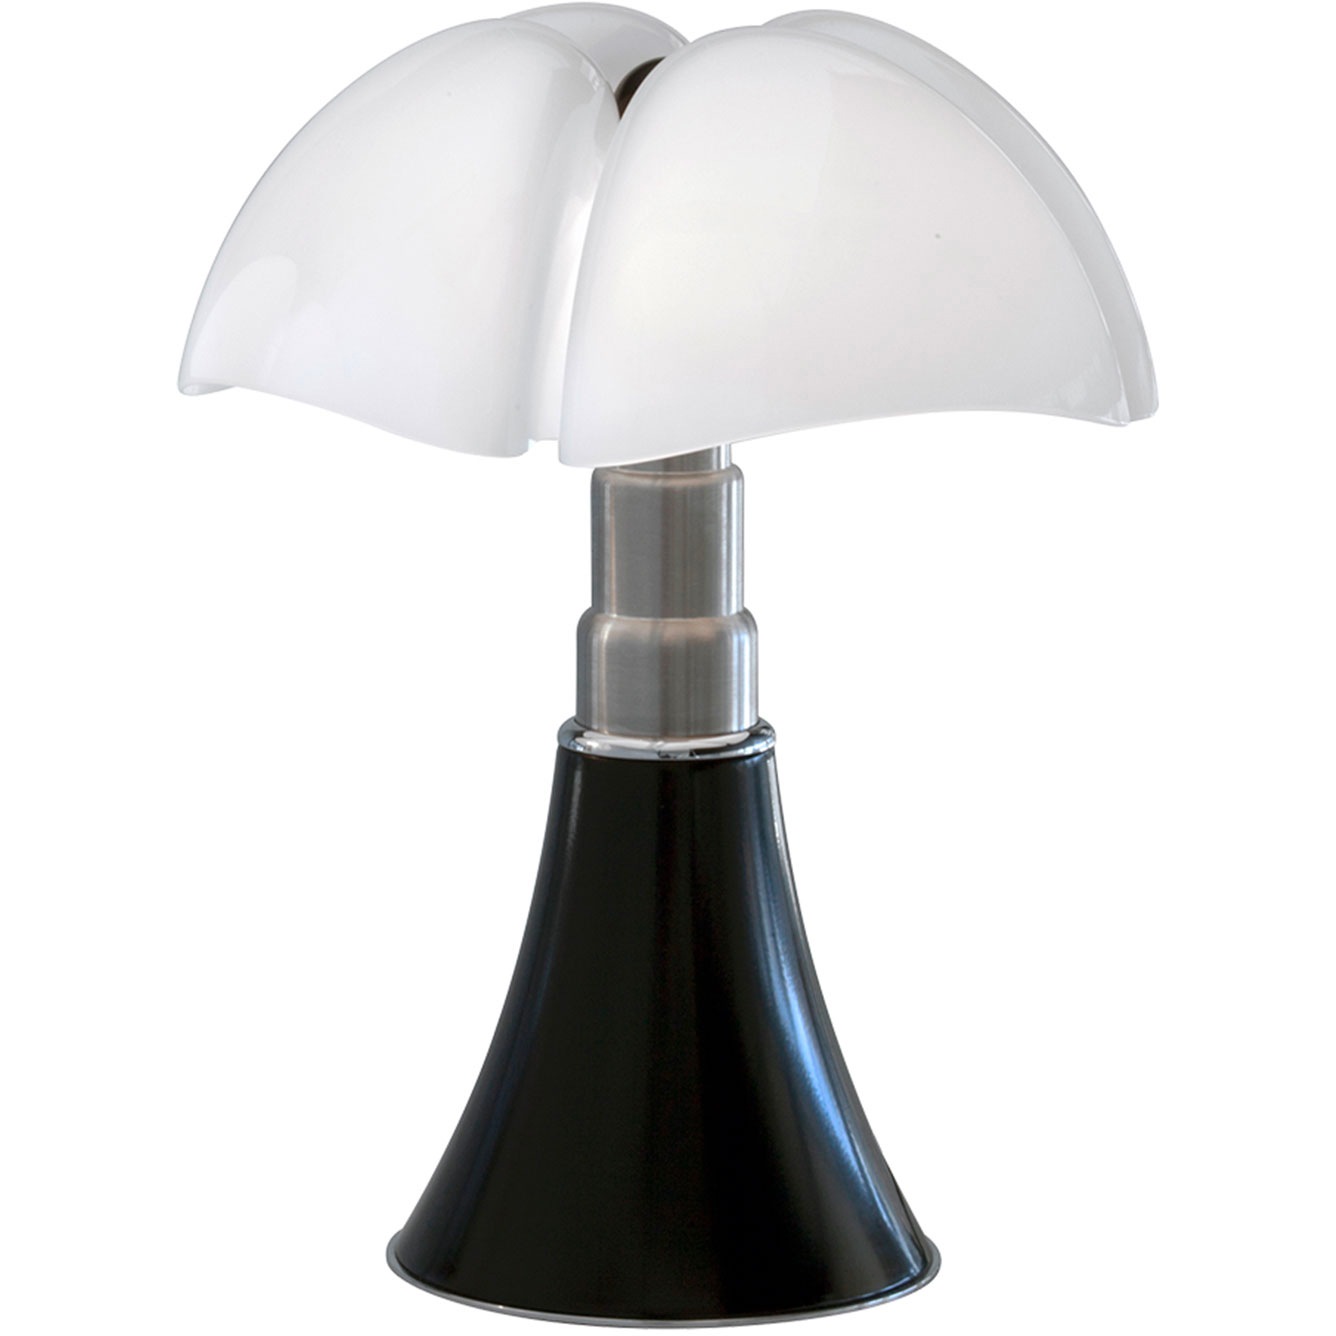 Pipistrello Mini Table Lamp LED, Dark Brown